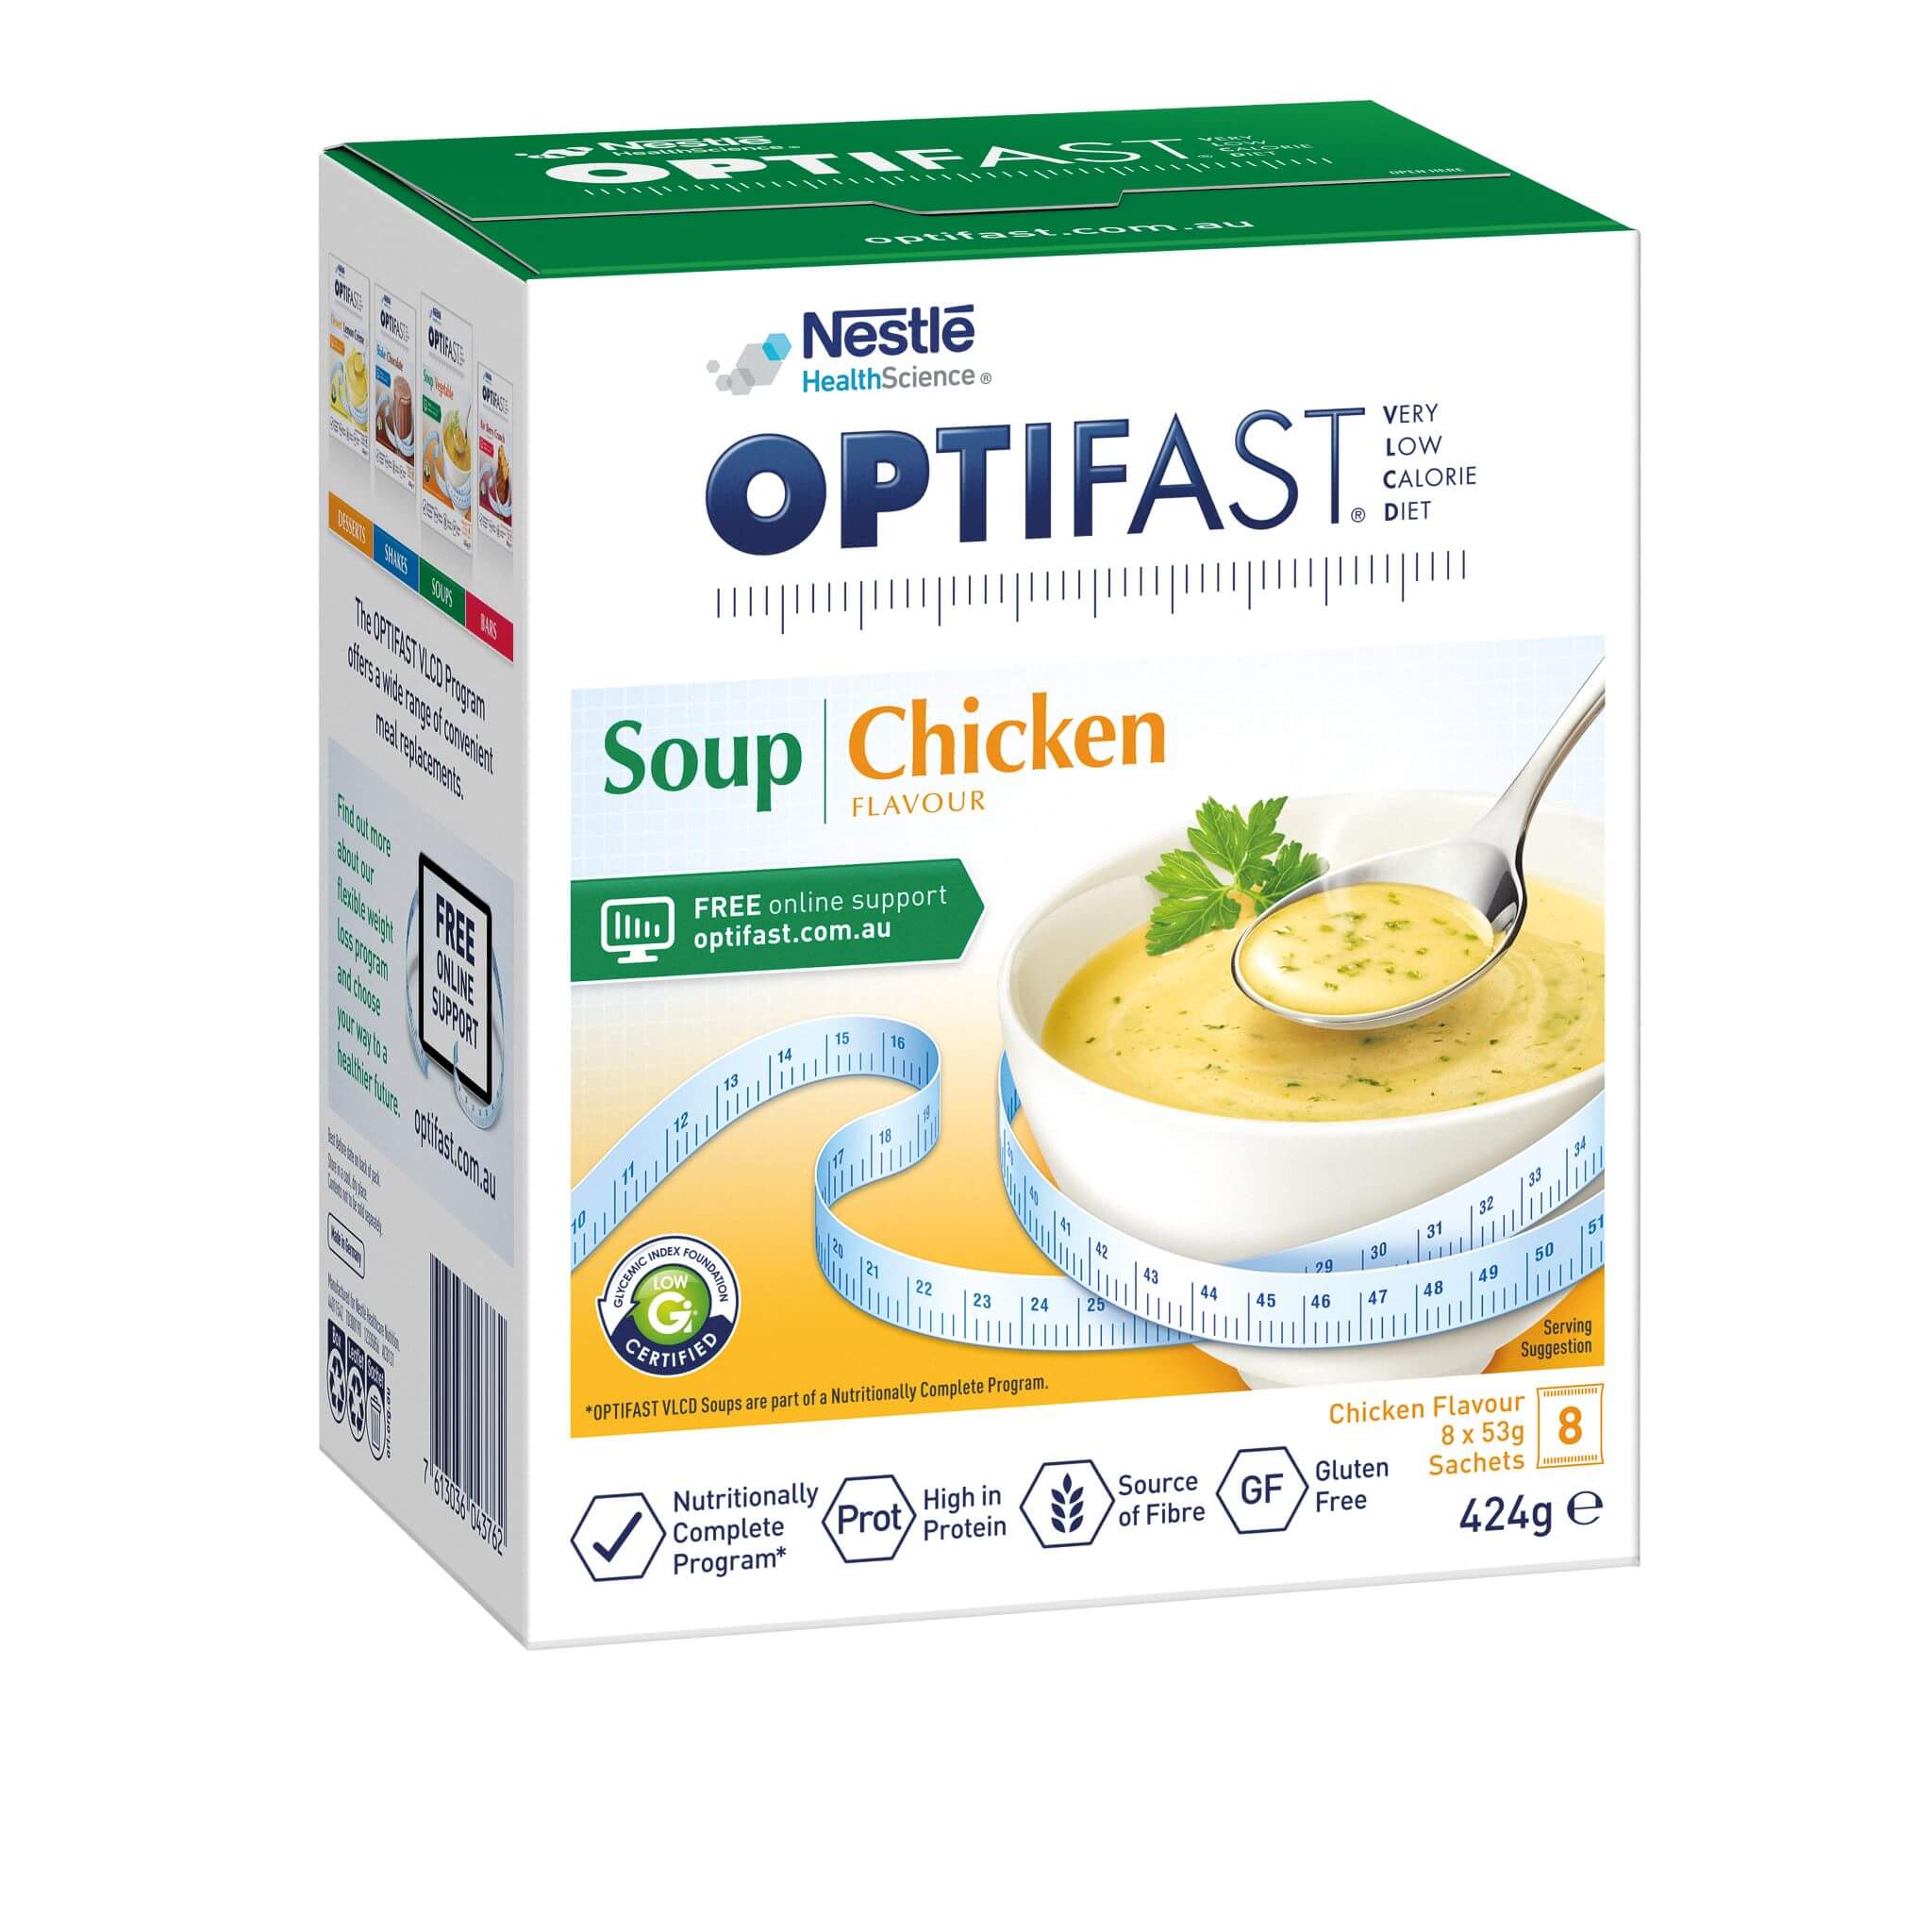 OPTIFAST VLCD Soup Chicken Flavour 8x53g